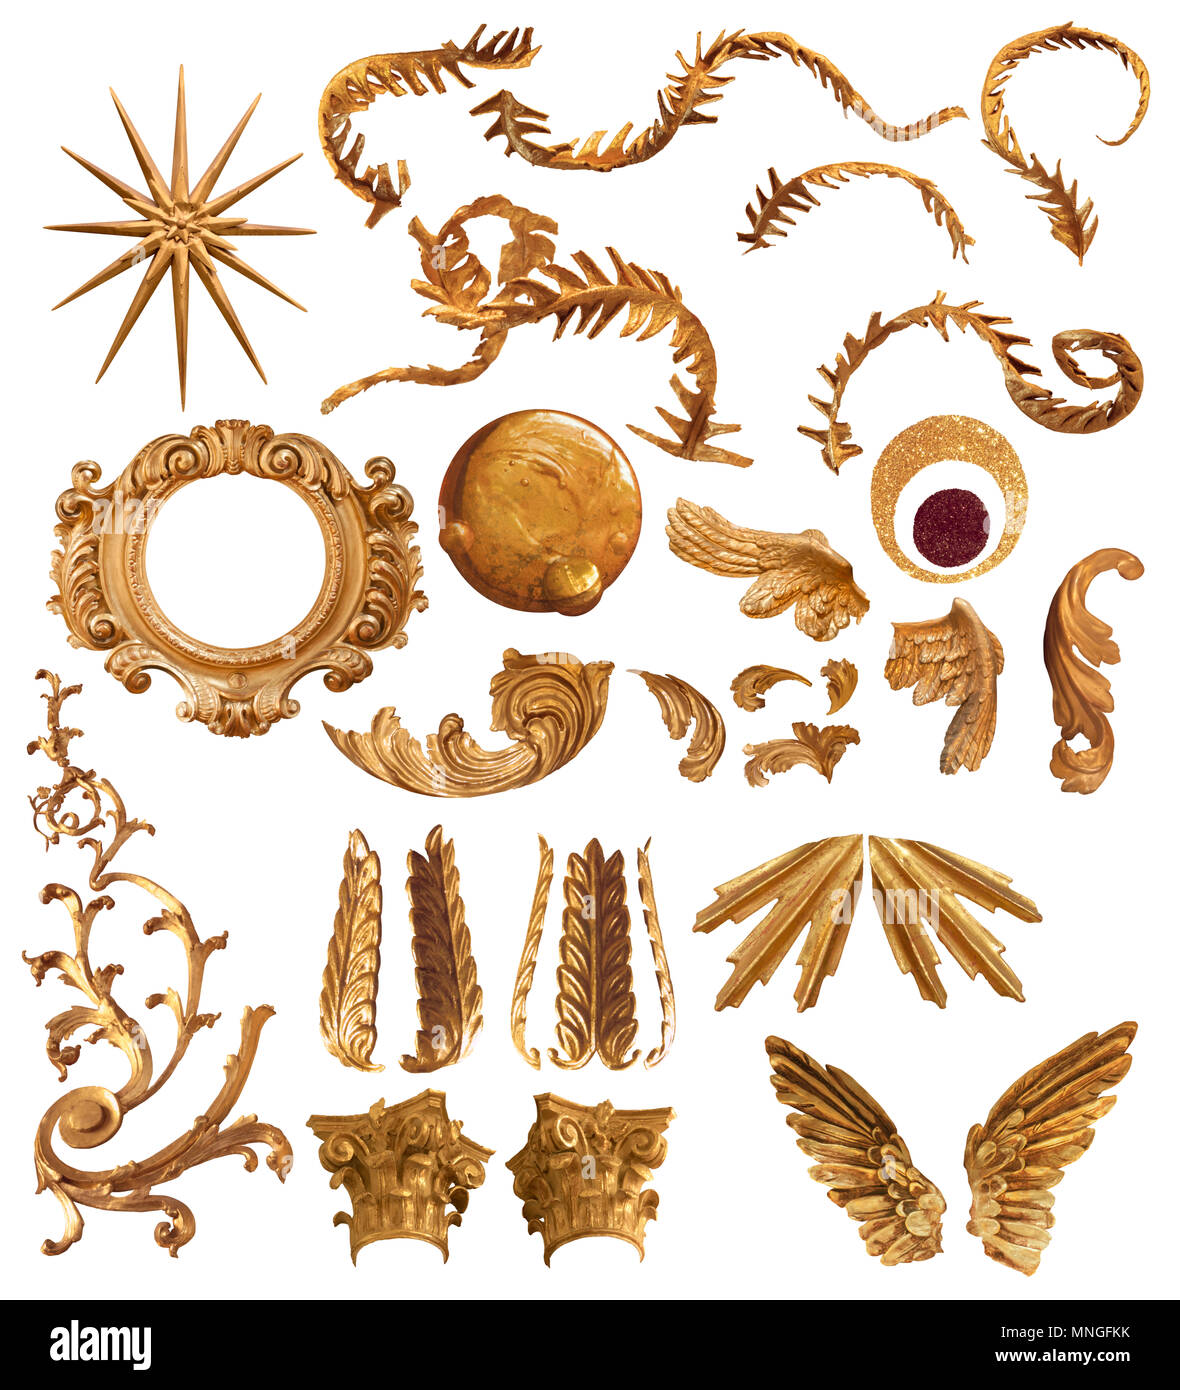 Plume d'or anciens éléments formes et ornements collection, vient avec chemins de détourage, isolated on white Banque D'Images